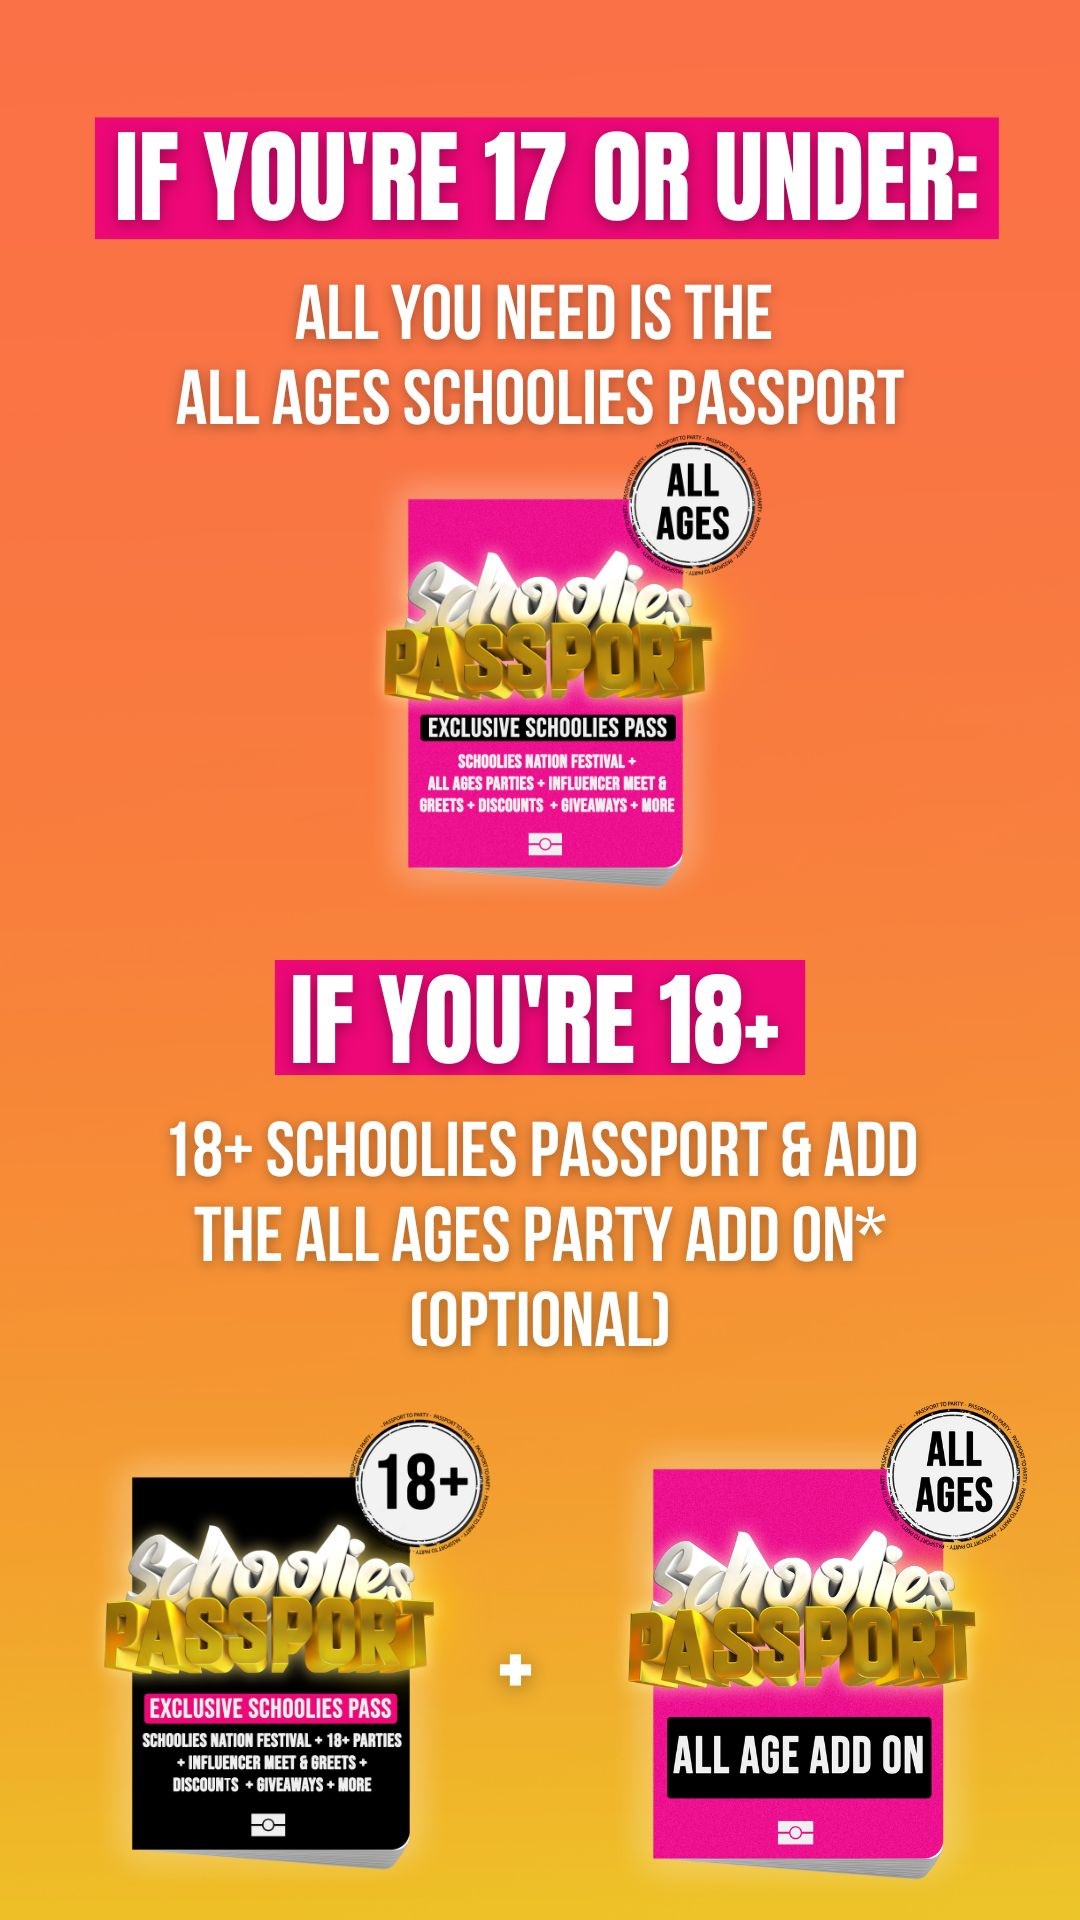 2022-schoolies-passport-guide.jpg